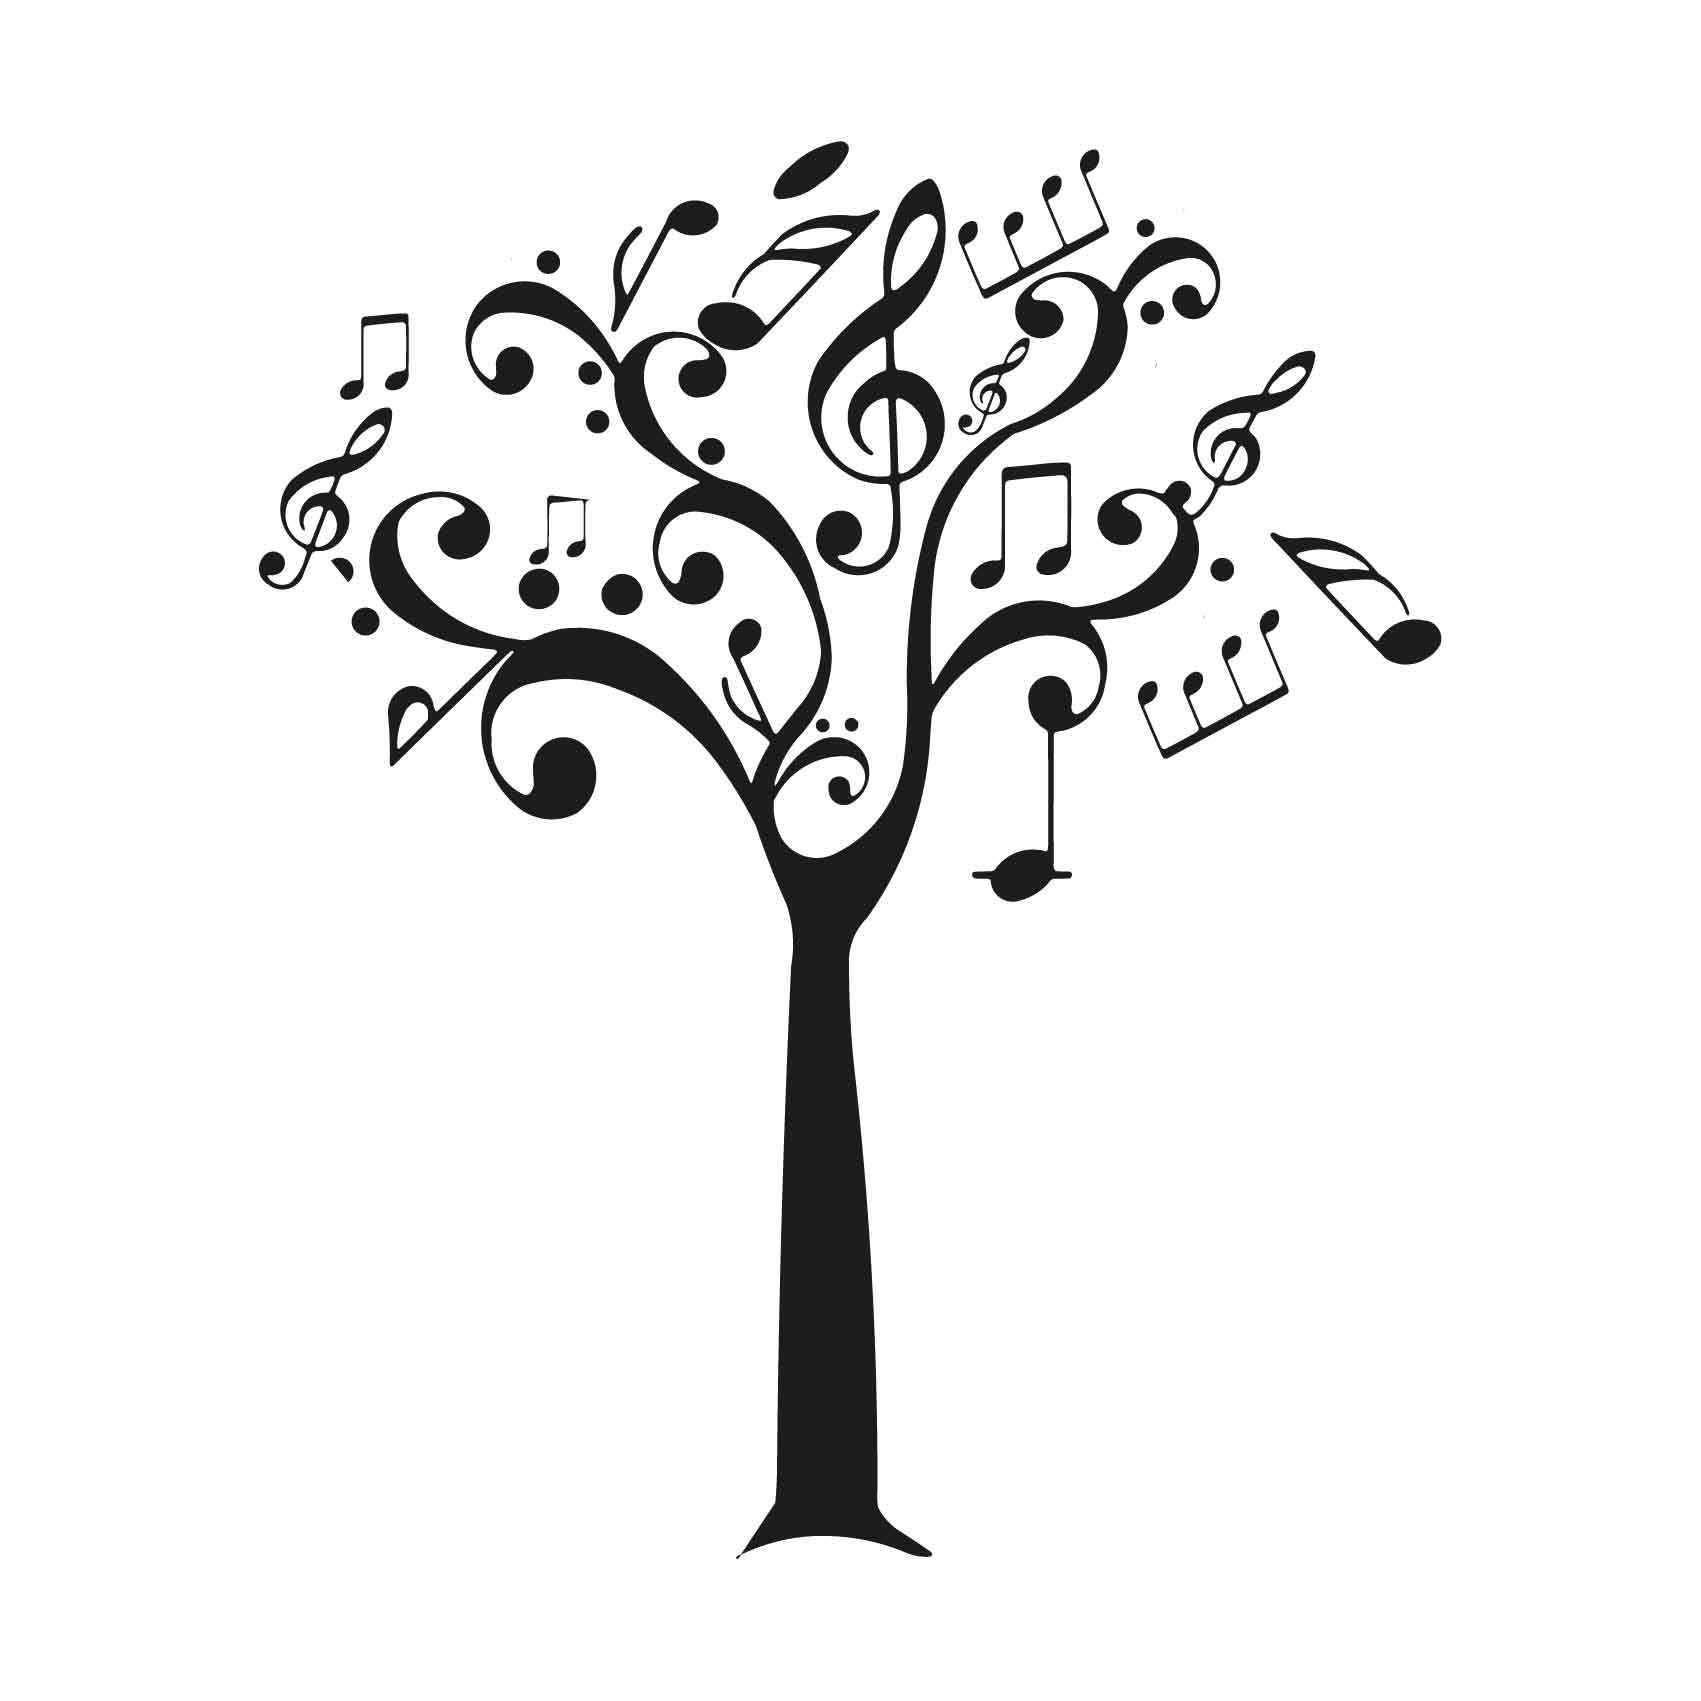 stickers-arbre-musique-ref9arbre-autocollant-muraux-sticker-geant-arbre-deco-branche-noir-rose-gris-vert-blanc-chambre-salon-(2)